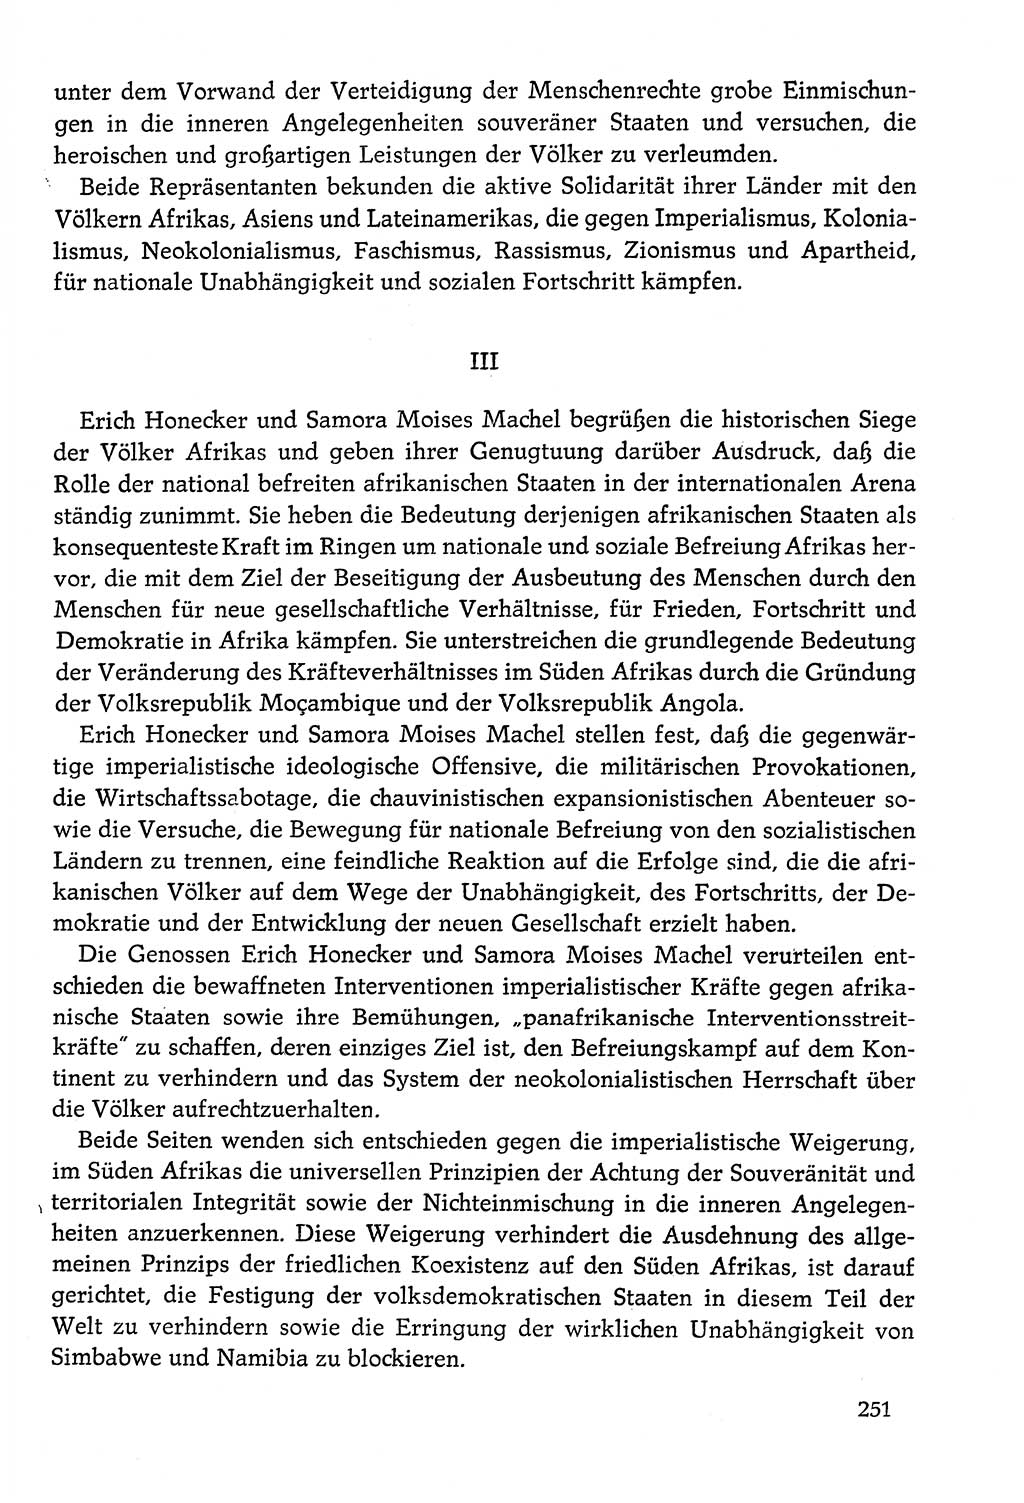 Dokumente der Sozialistischen Einheitspartei Deutschlands (SED) [Deutsche Demokratische Republik (DDR)] 1978-1979, Seite 251 (Dok. SED DDR 1978-1979, S. 251)